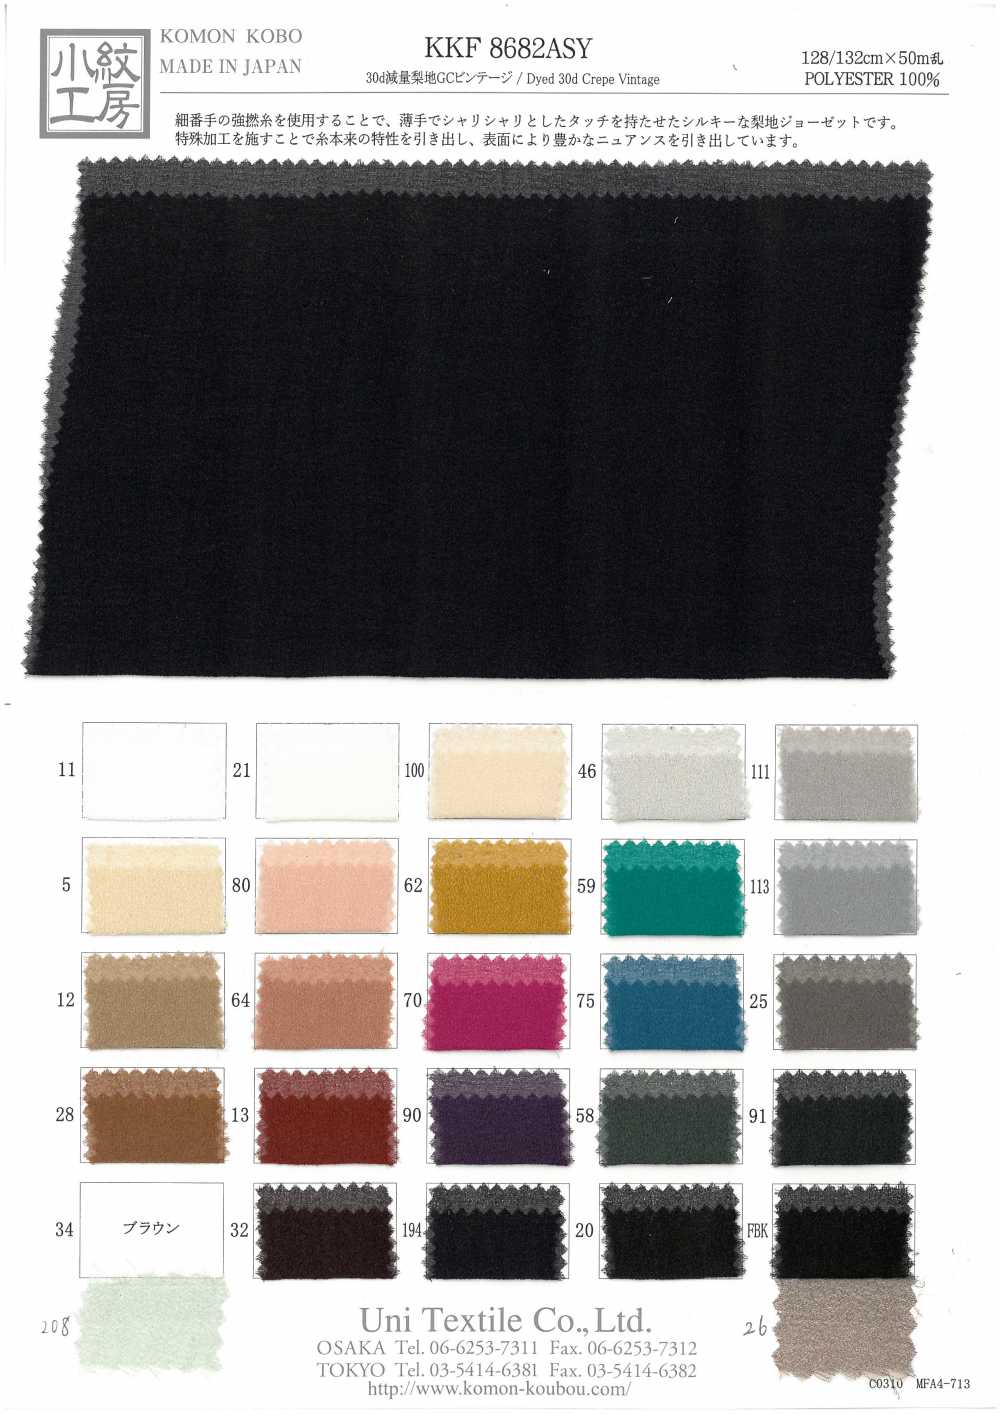 KKF8682ASY 30d Gewichtsverlust Sandwash Oberfläche GC Vintage[Textilgewebe] Uni Textile